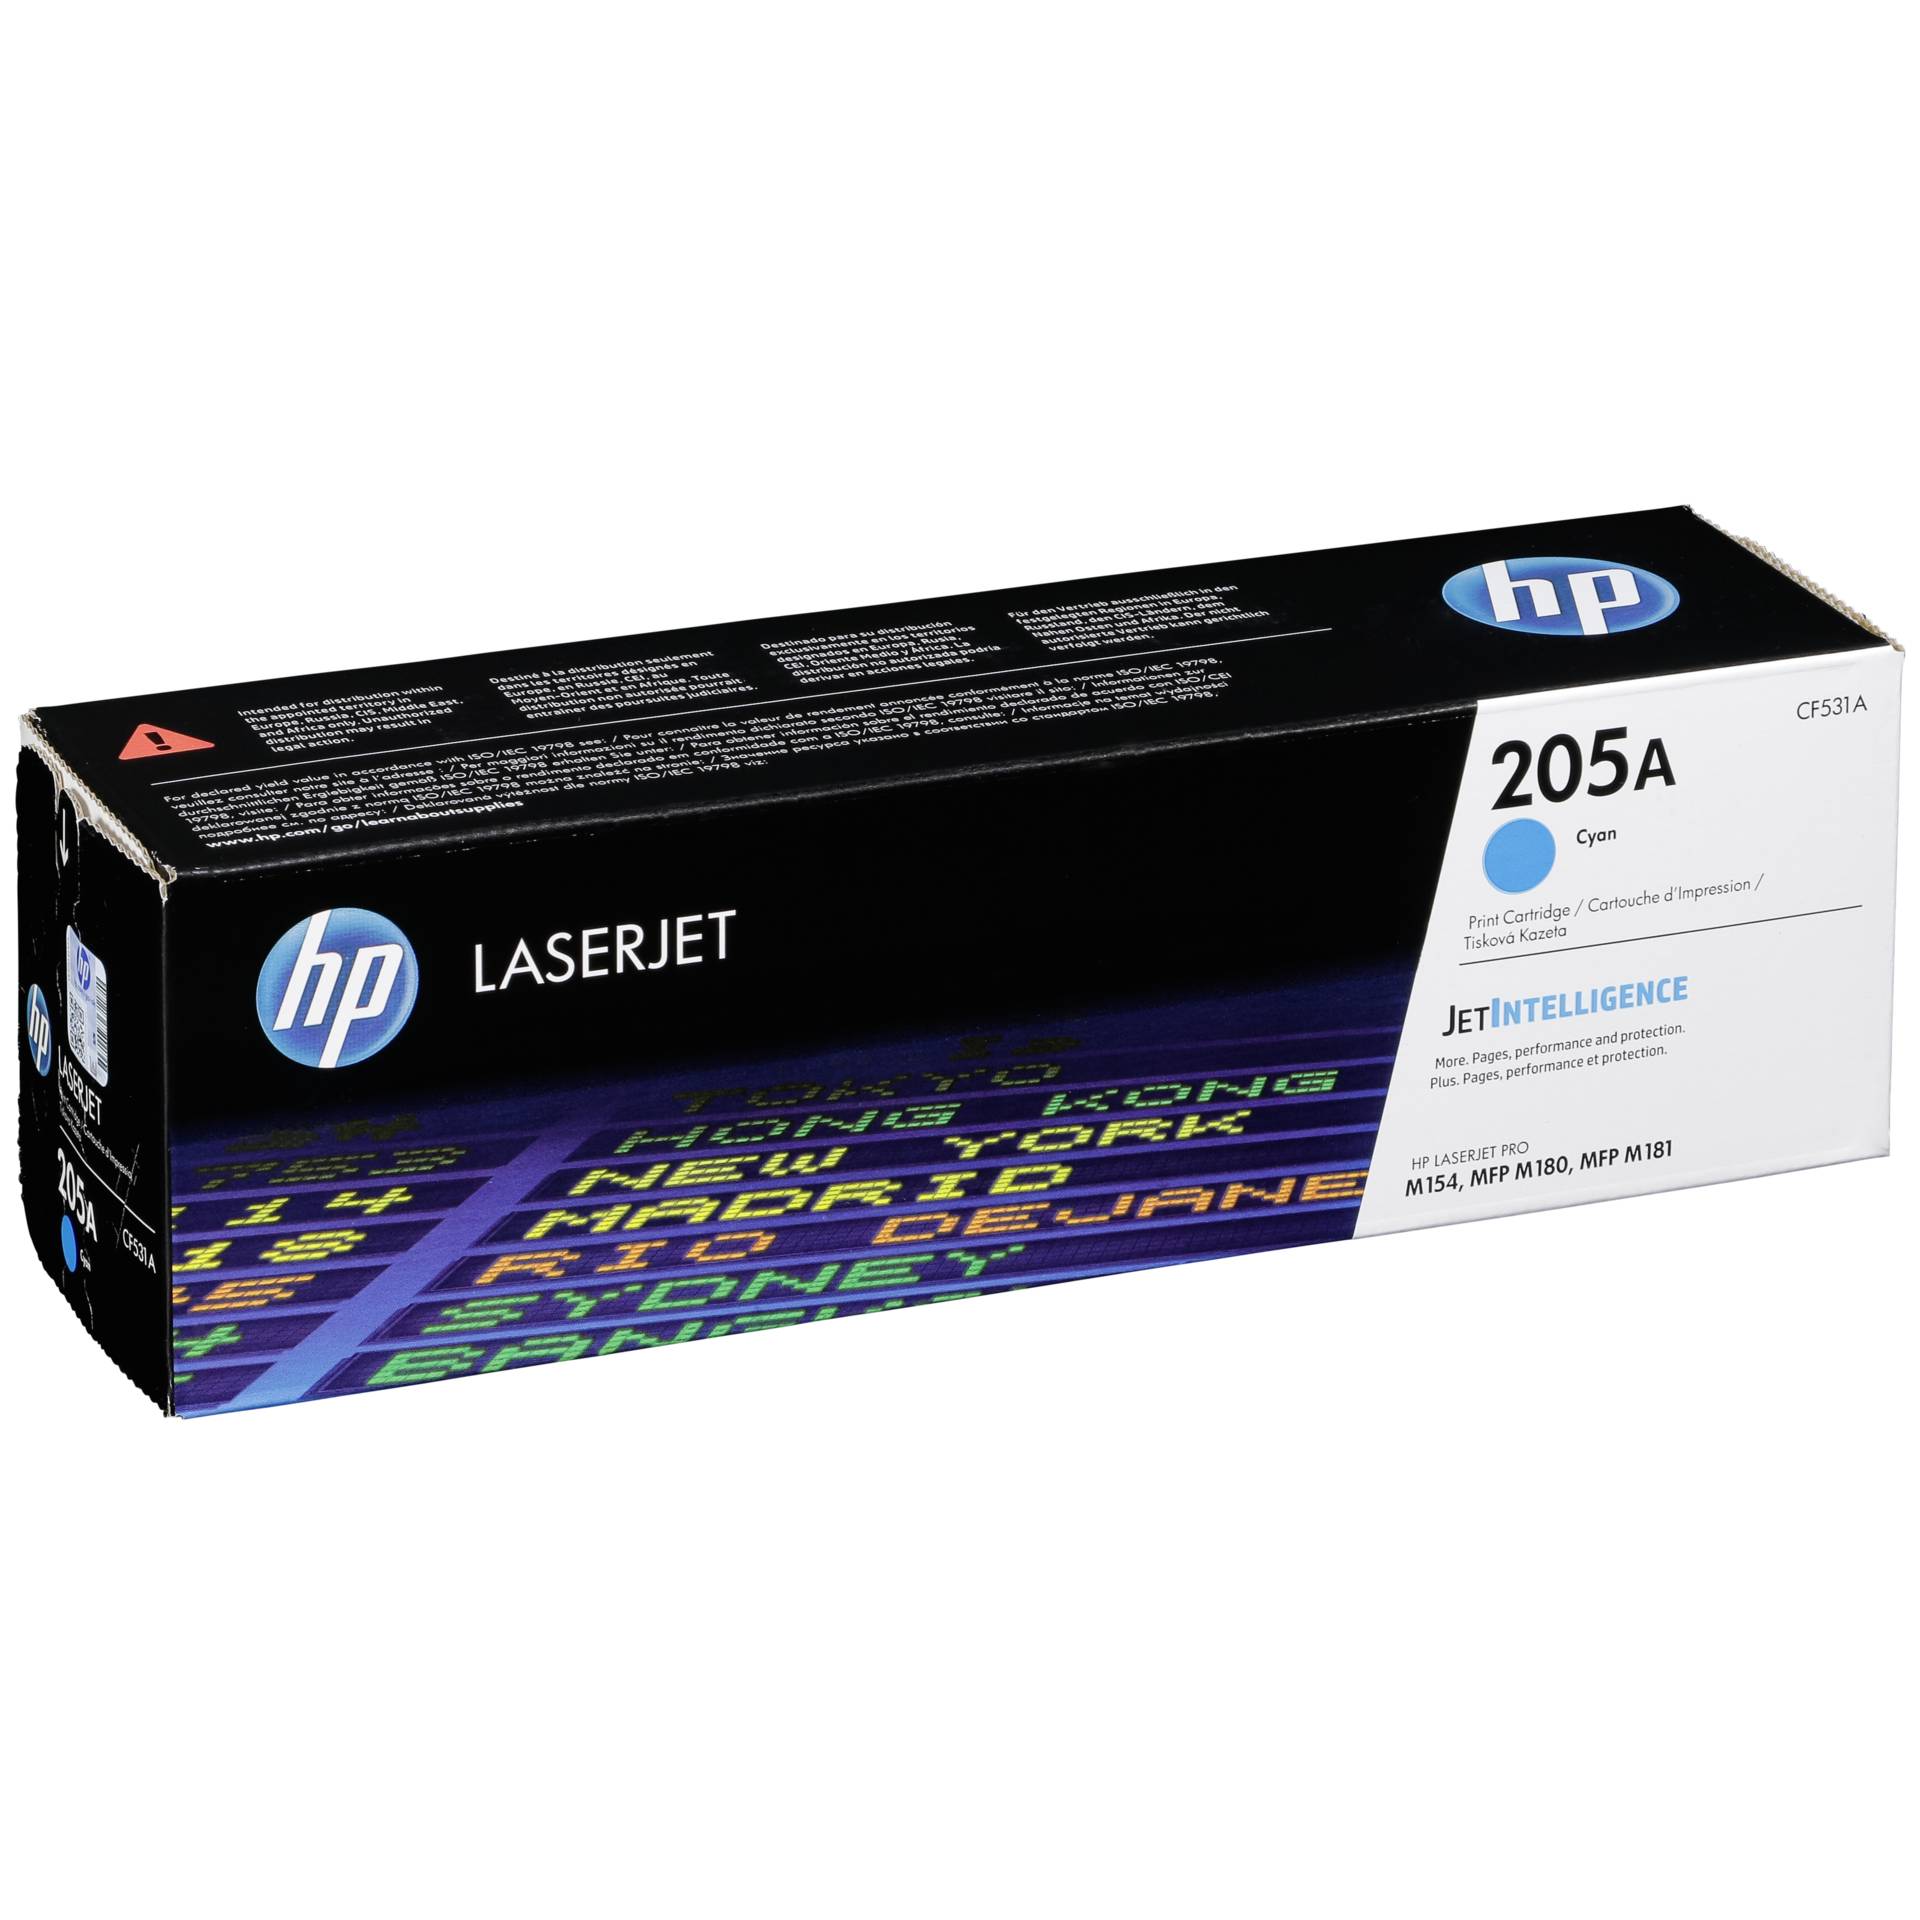 HP Toner 205A cyan Kapazität 900 Seiten